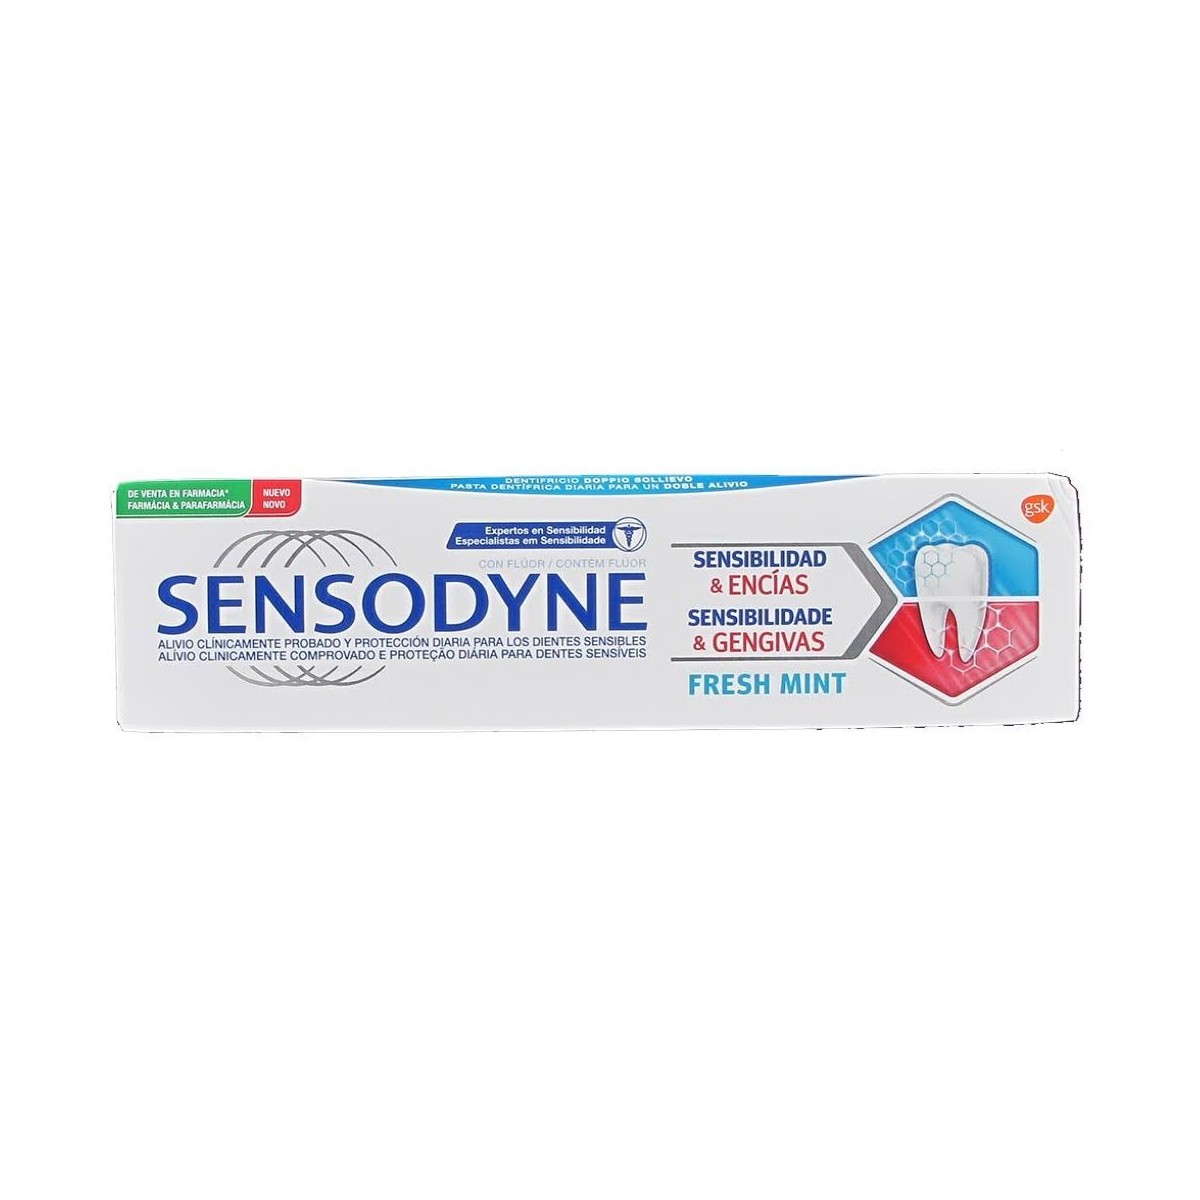 sensodyne-sensibilidad-encias-fresh-mint-75-ml